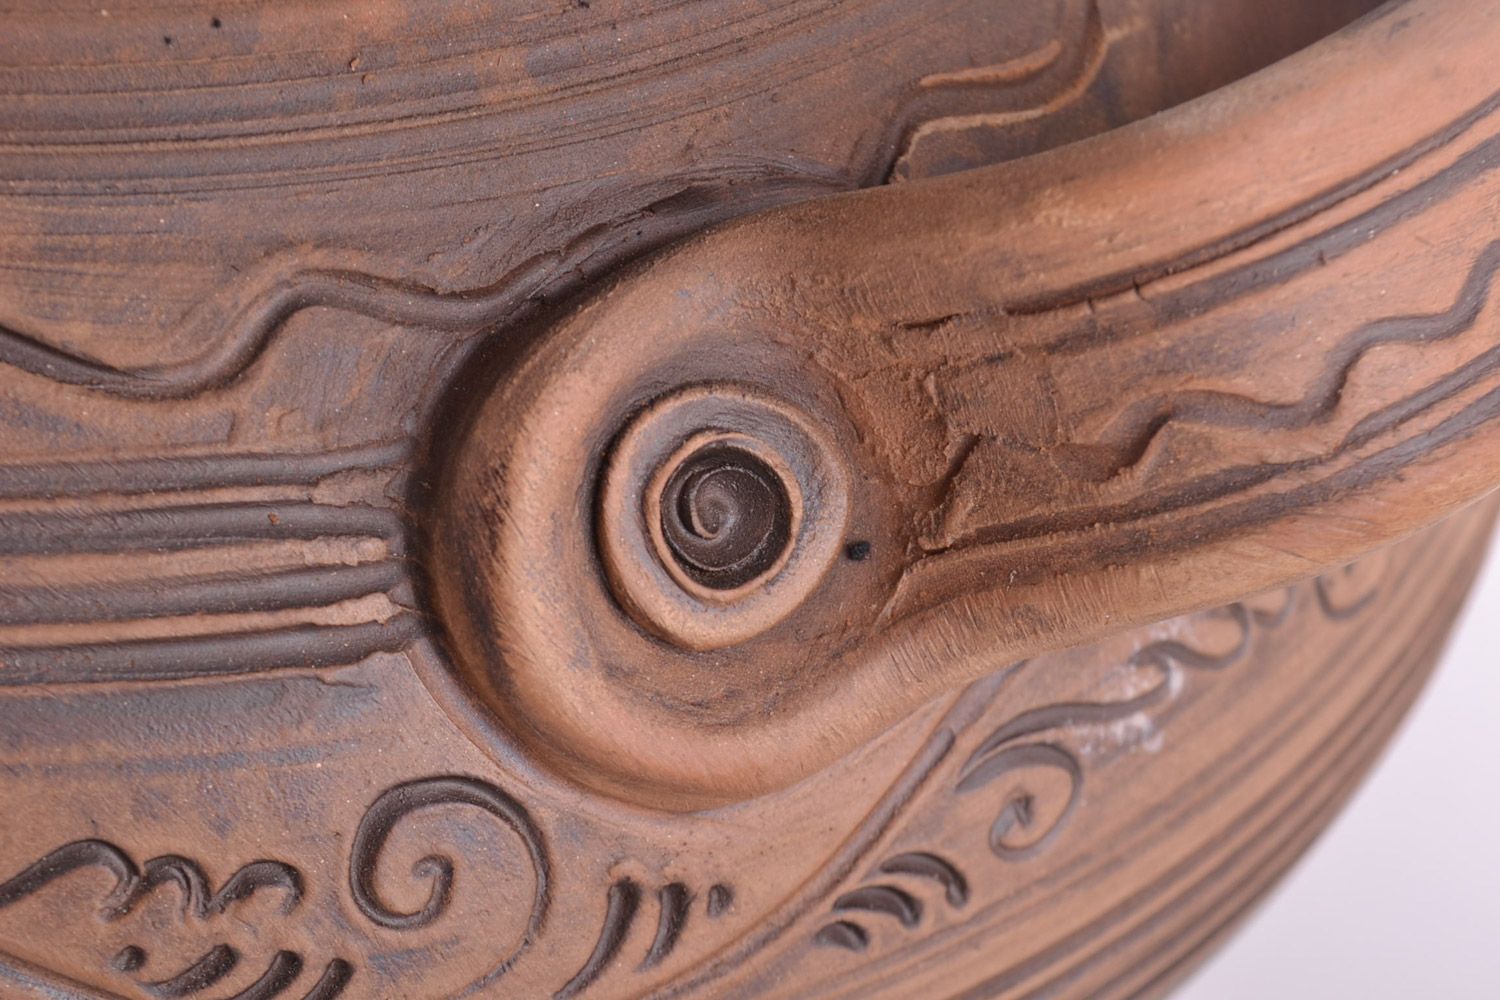 Großer handmade Keramik Topf mit Deckel Handarbeit 4 l in Braun für Backen  foto 4